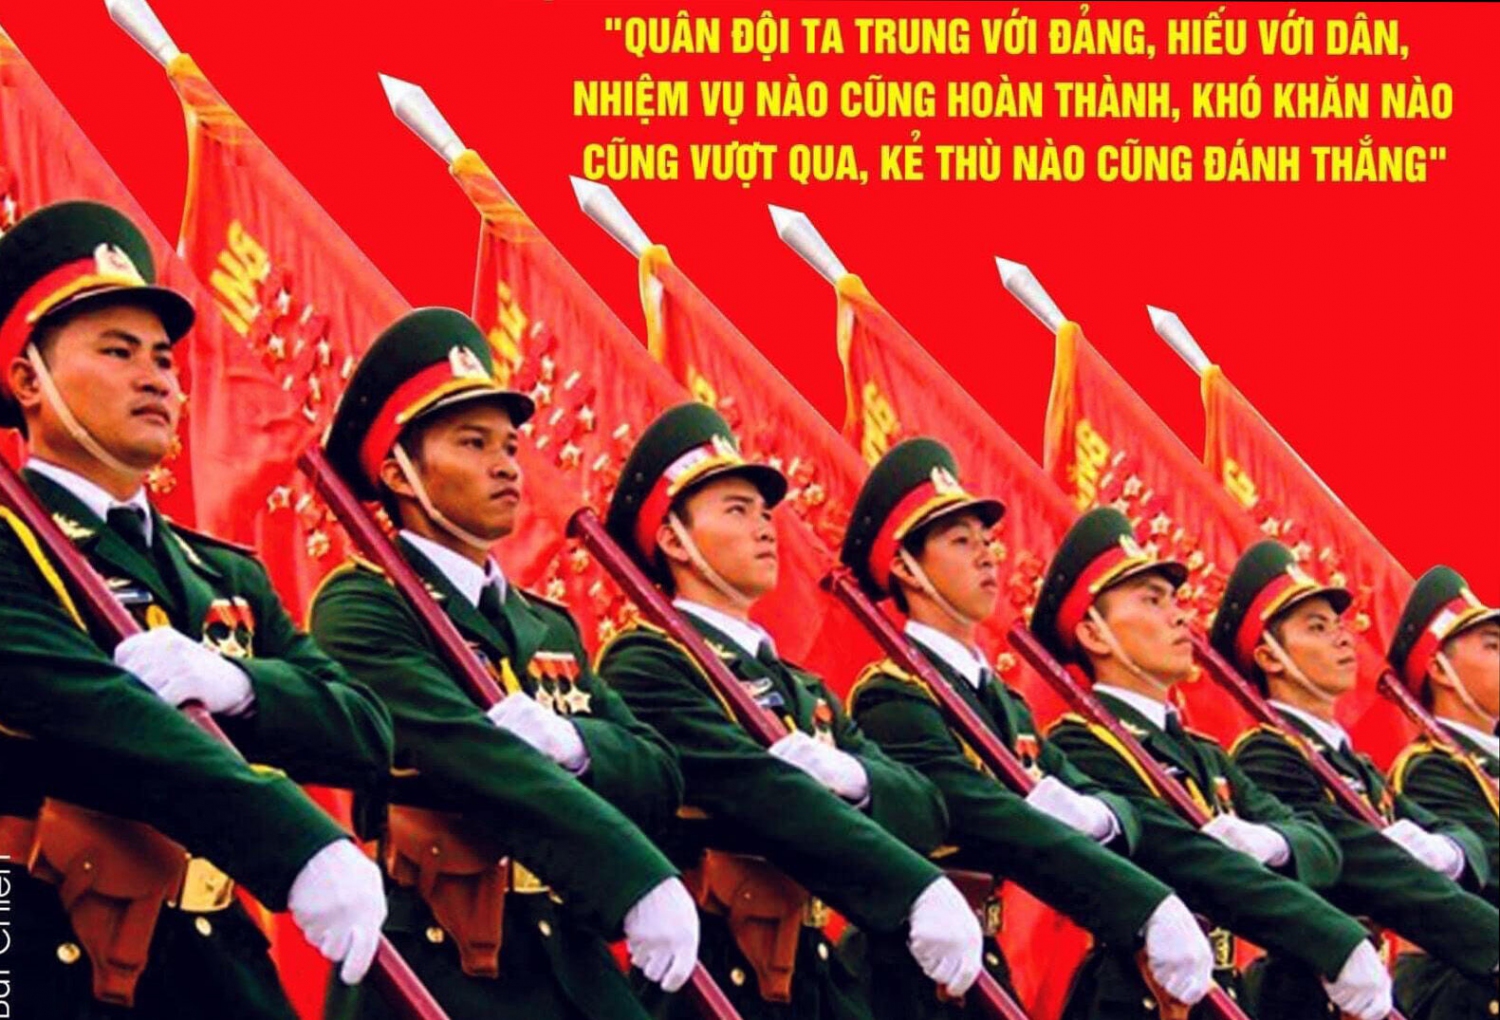 Giá trị của “Đề cương về Văn hóa Việt Nam” với sự nghiệp bảo vệ Tổ quốc hôm nay